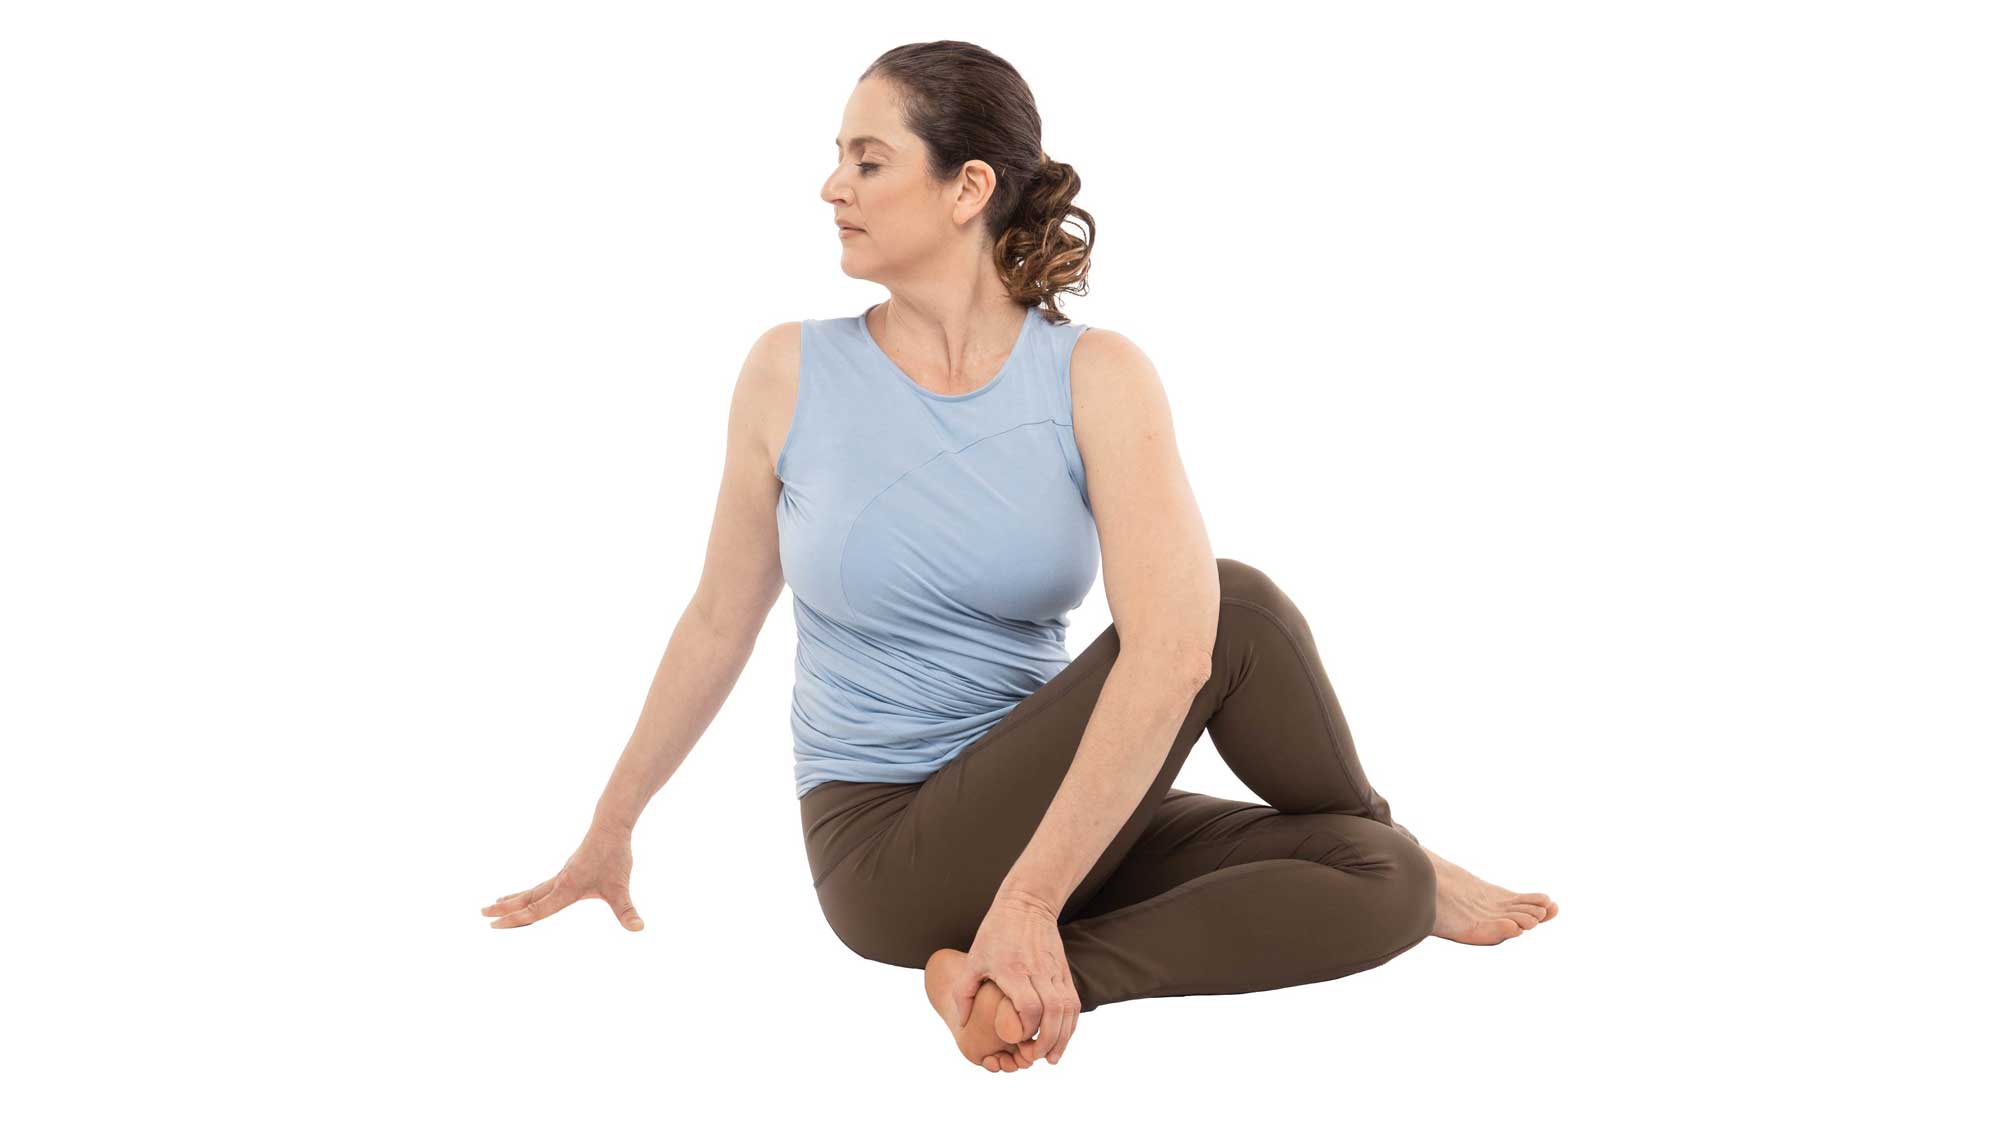 30 Min. Best Yoga for Kidney Health | Yoga Poses for Kidney Health |  Improve Kidney health - YouTube